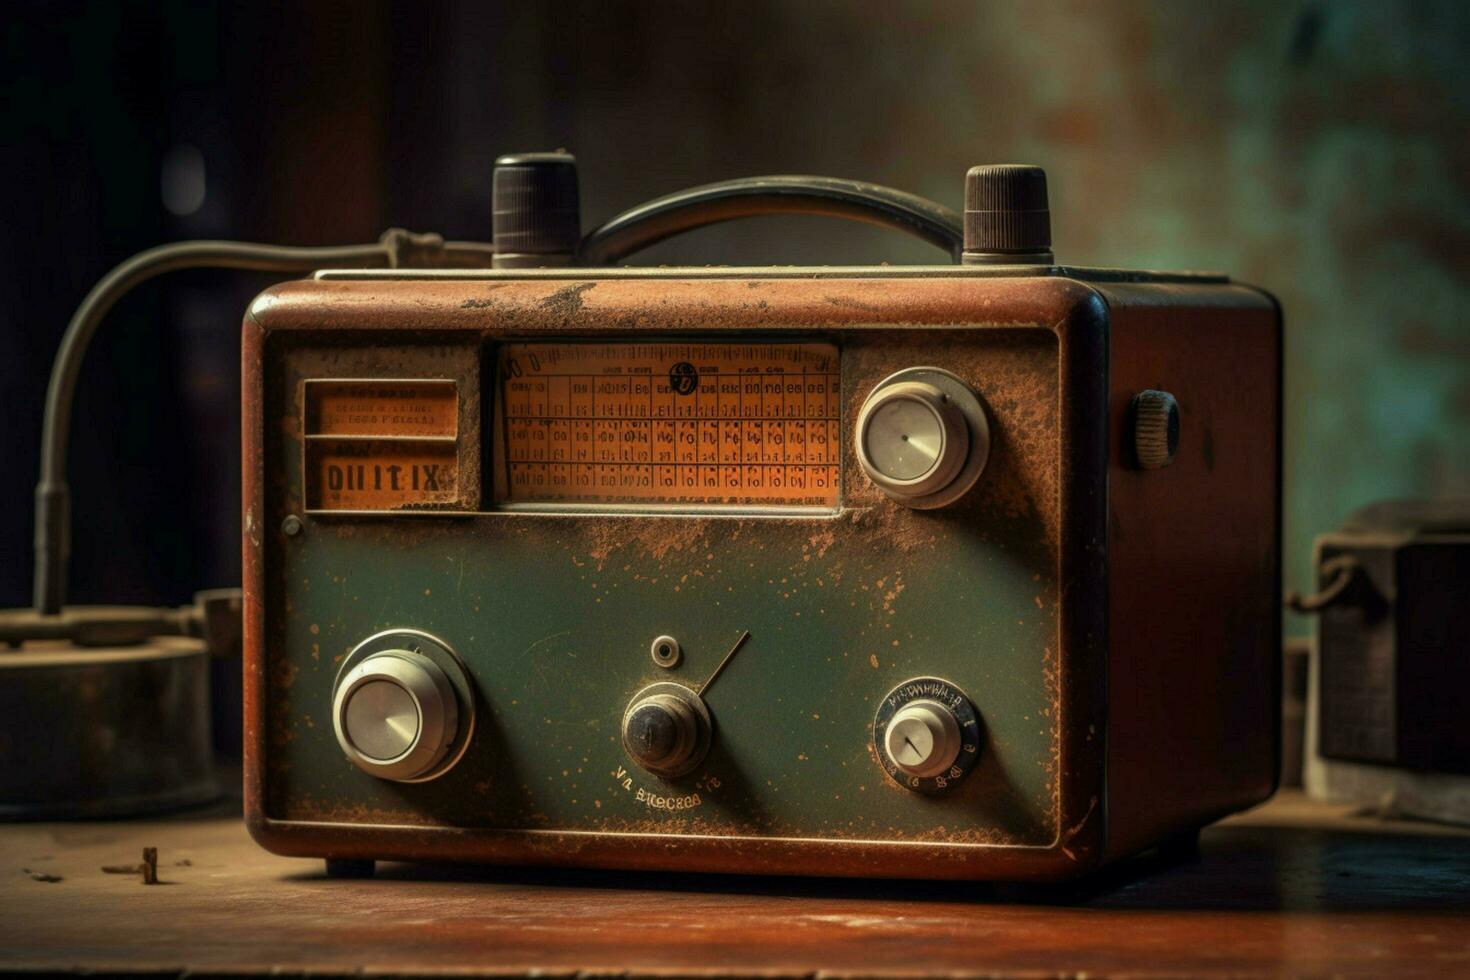 ett gammal fashioned radio med en rostig knopp foto